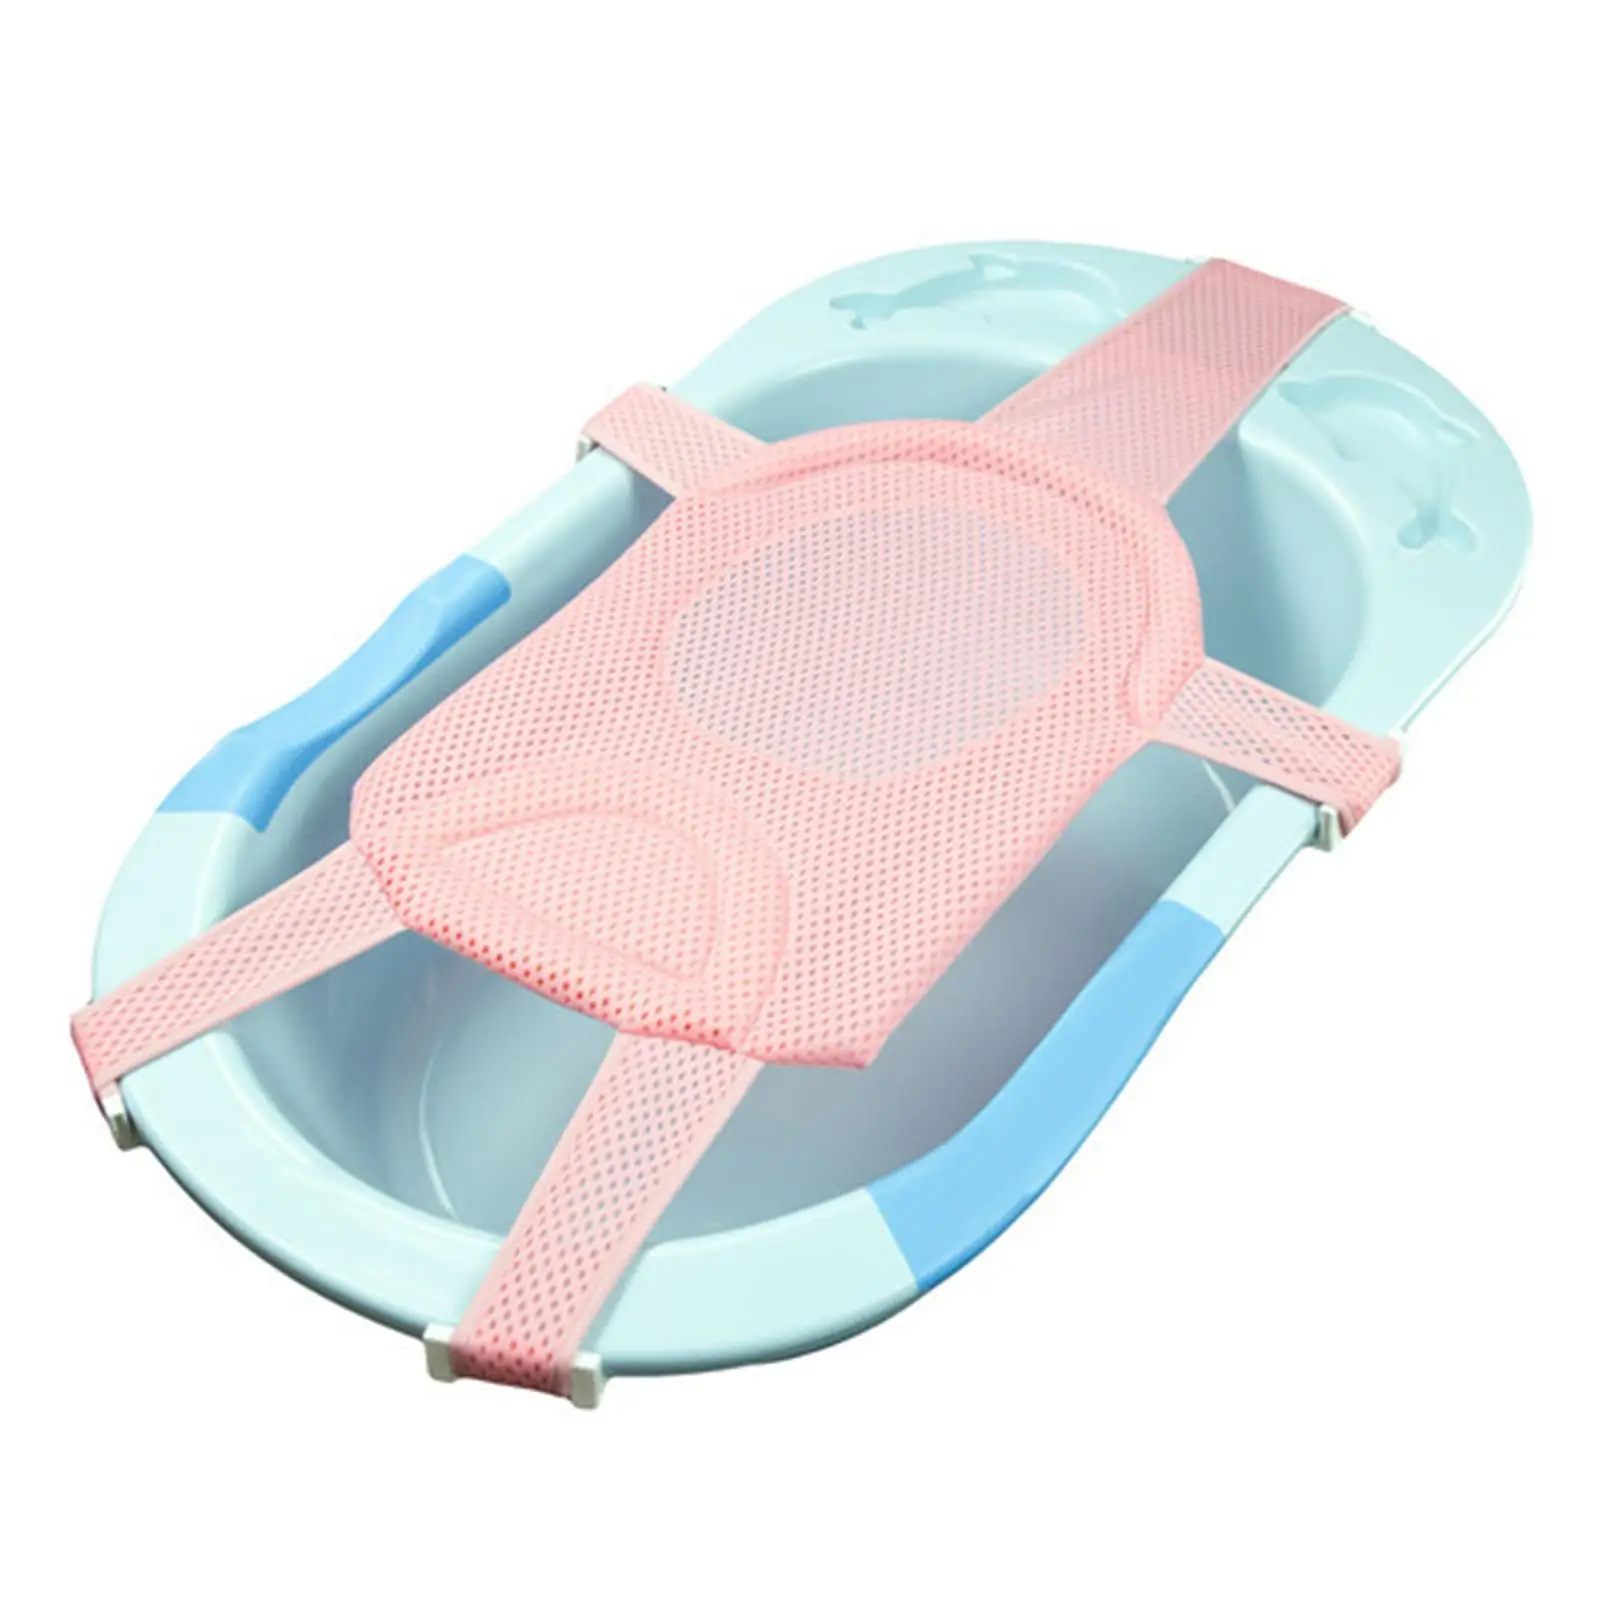 Soft Baby Bath Cushion Accessories Shower Bathtub  Seat Cushion Mat Bathing Adjustable Baby Bath Pad for Bathtub Baby Kids